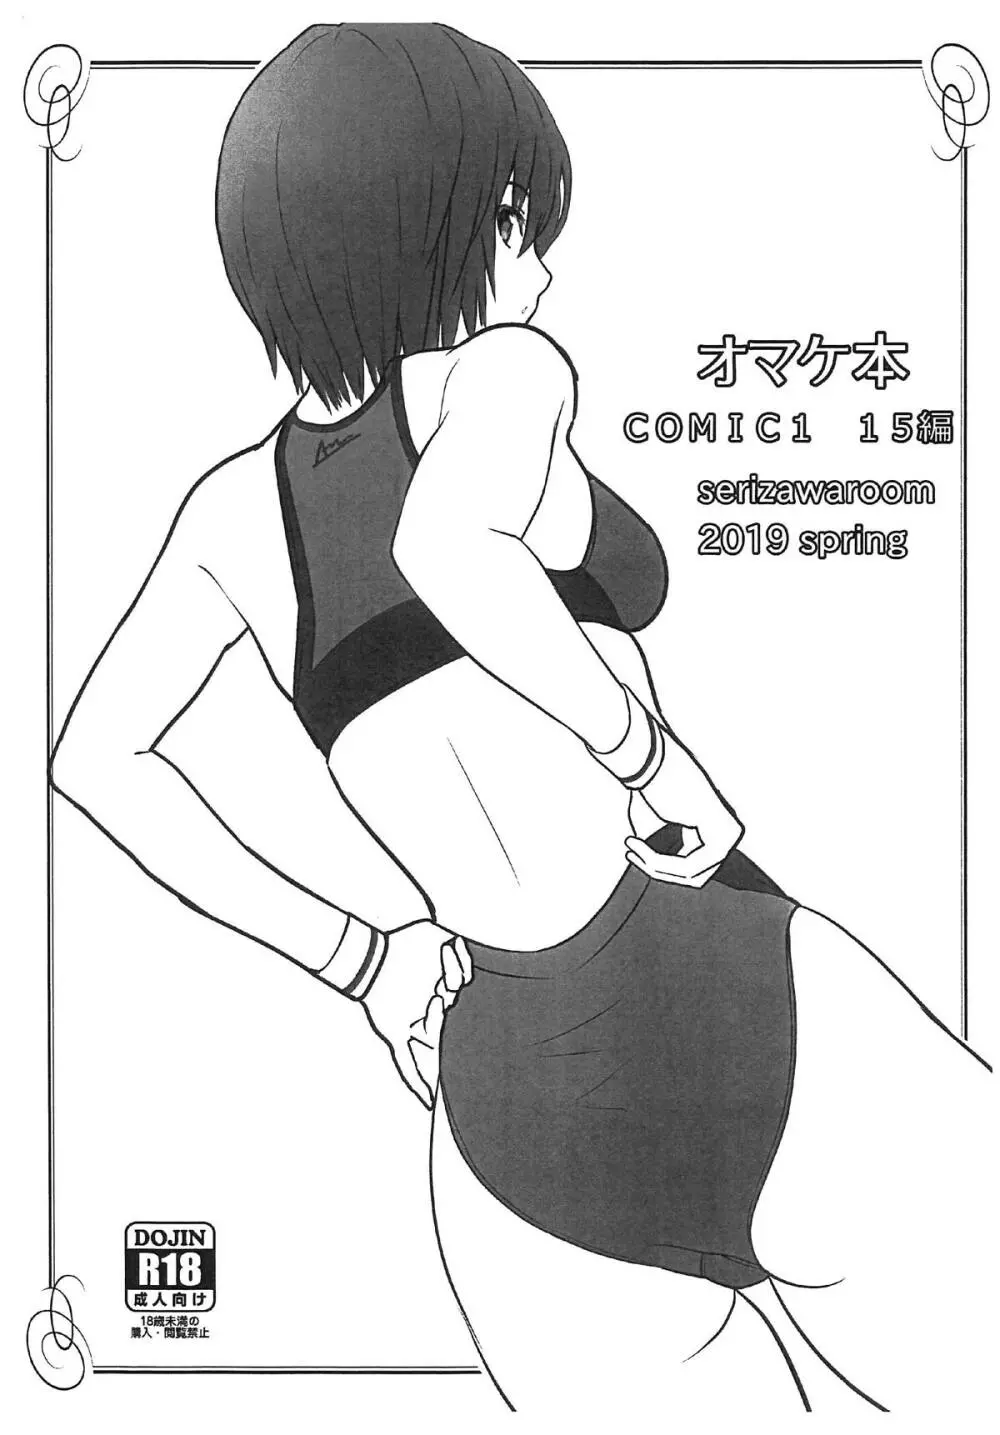 オマケ本 COMIC1 15編